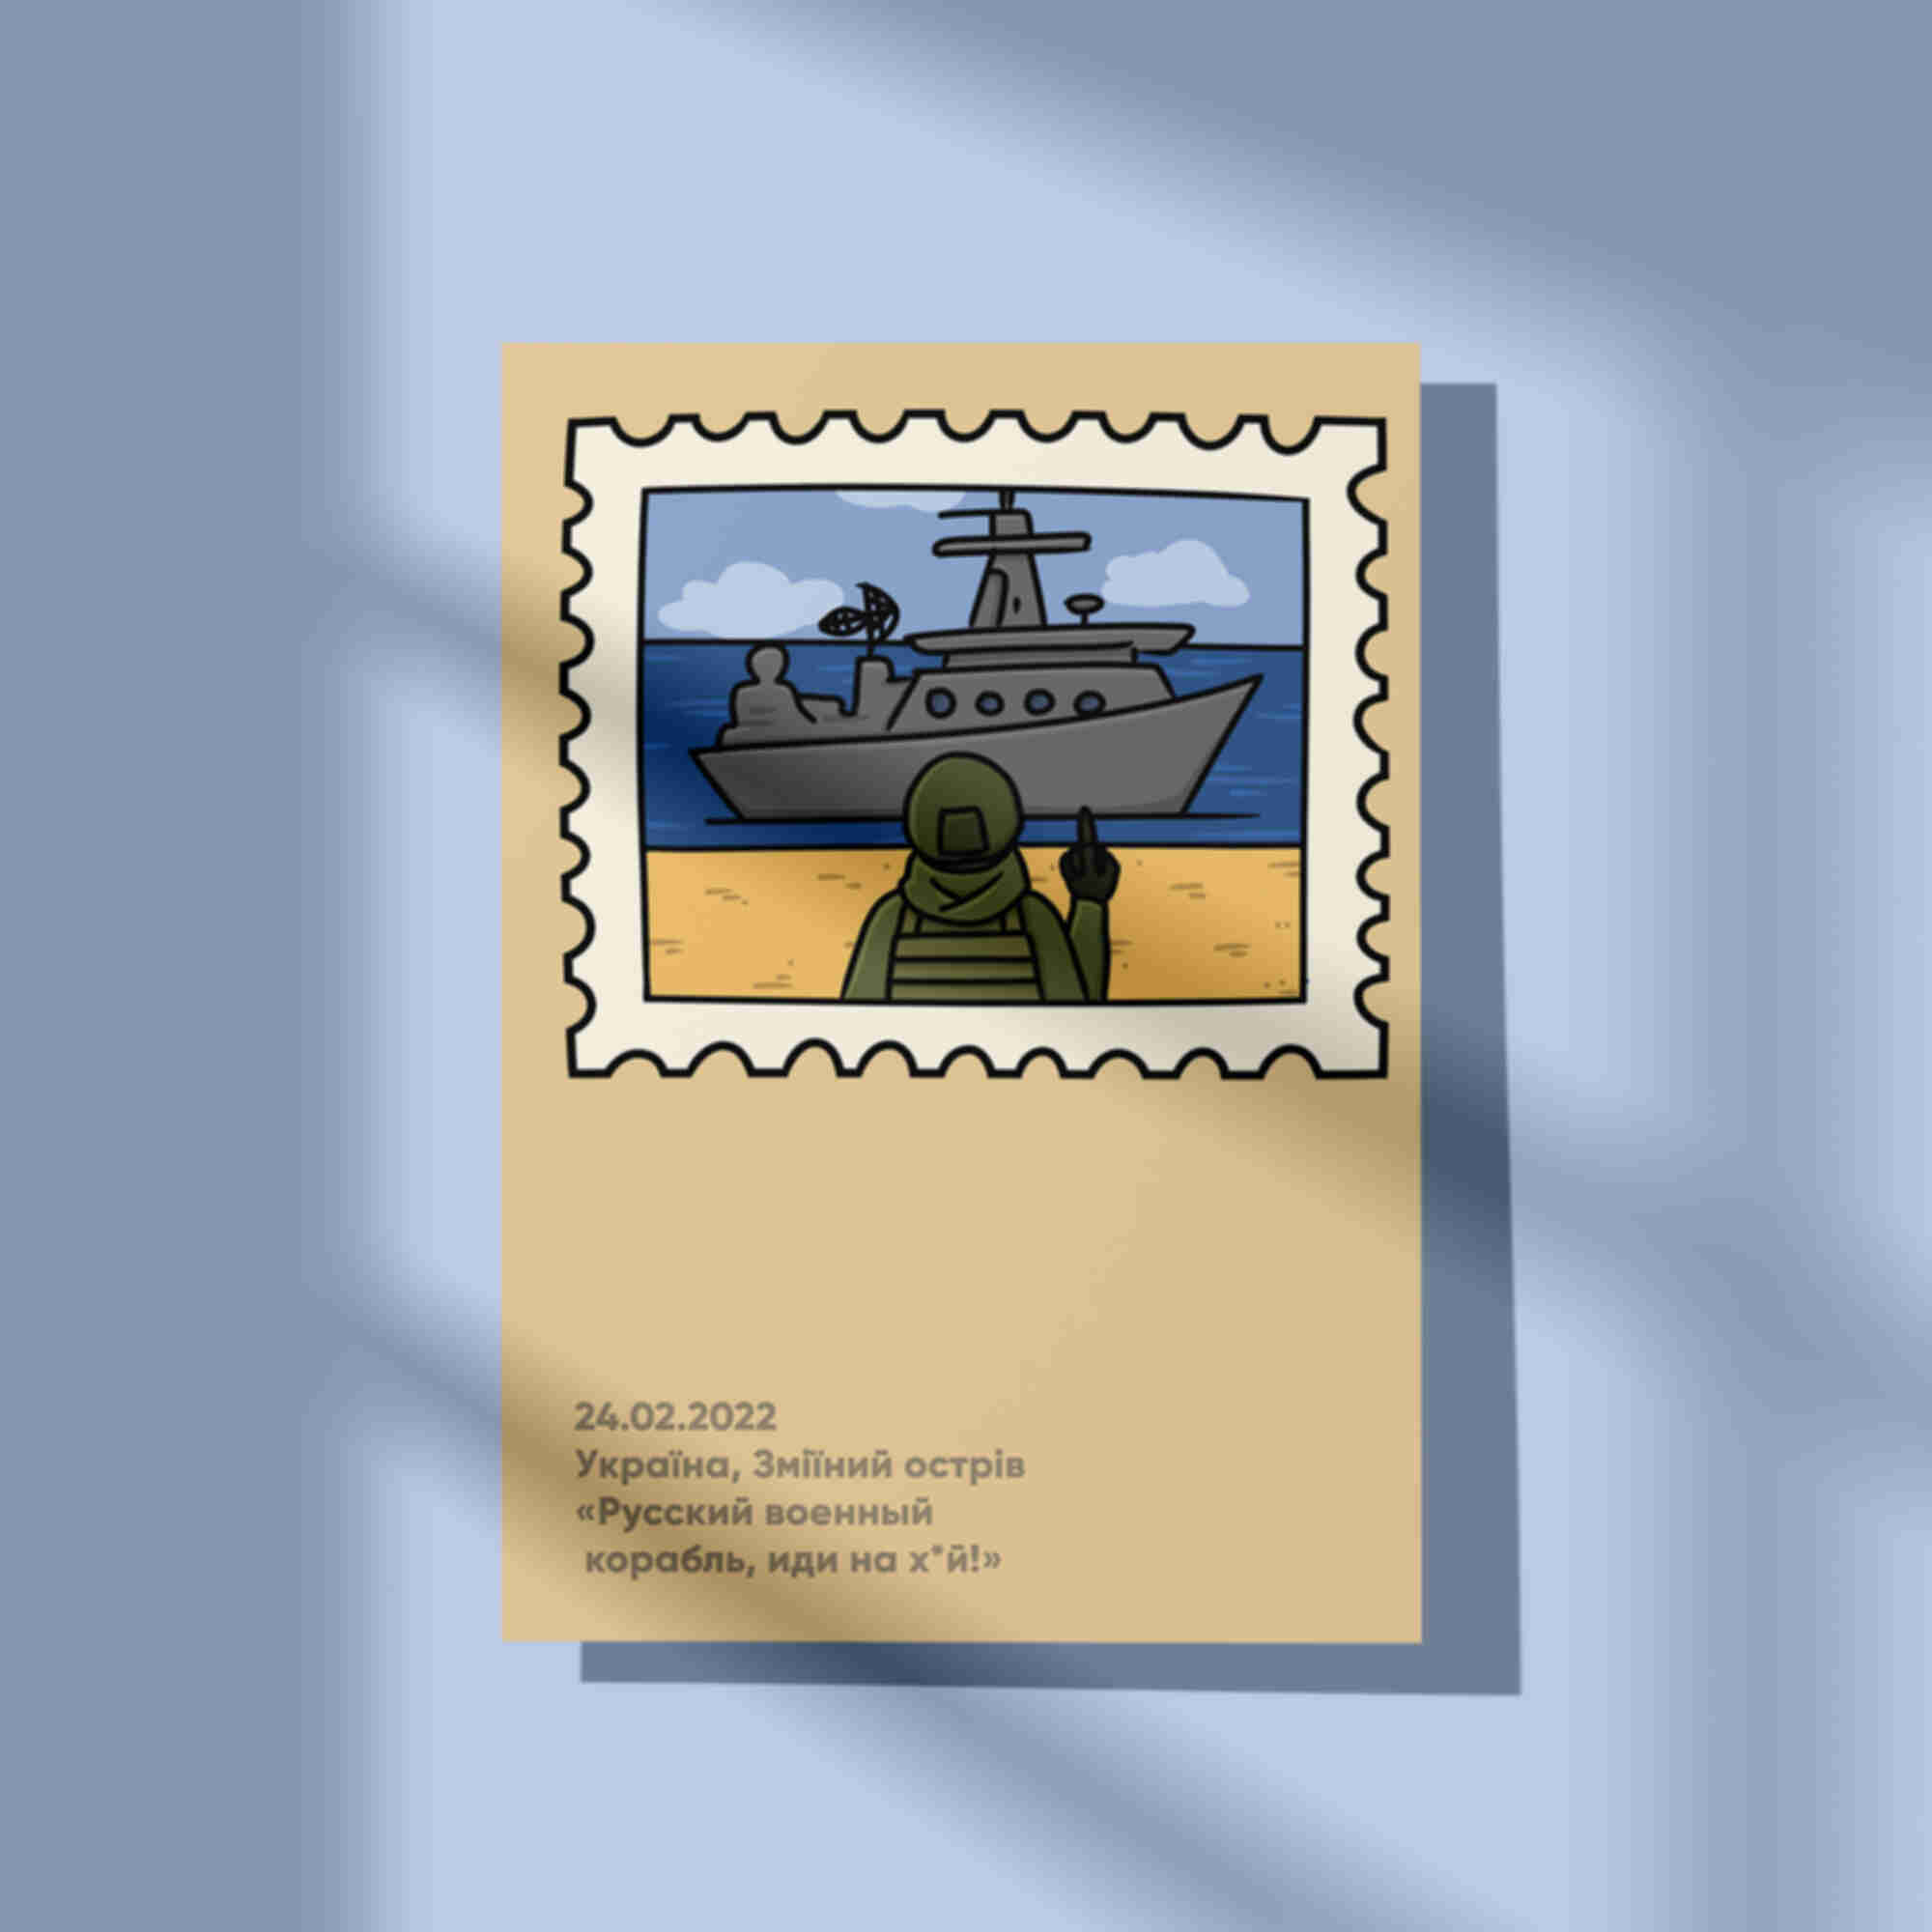 Открытка / постер «Воєнний корабль» • Змеиный • Украина • Патриотические сувениры. Фото №2